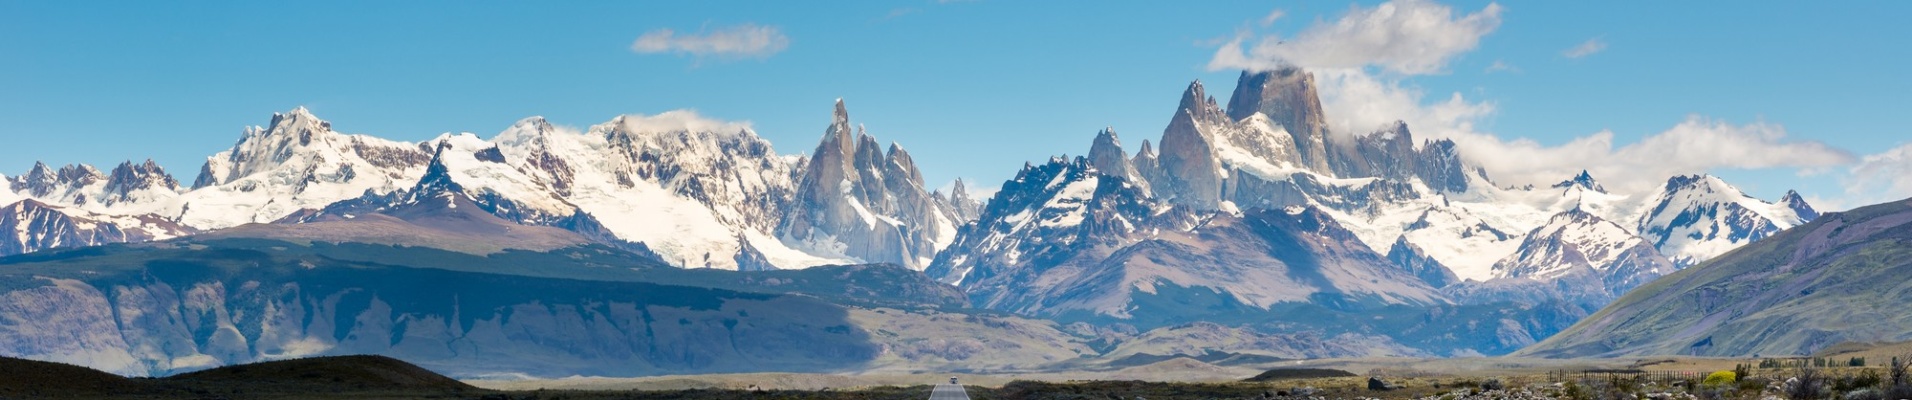 Cerro Torre, Fitz Roy, Patagonie, Argentine en voiture